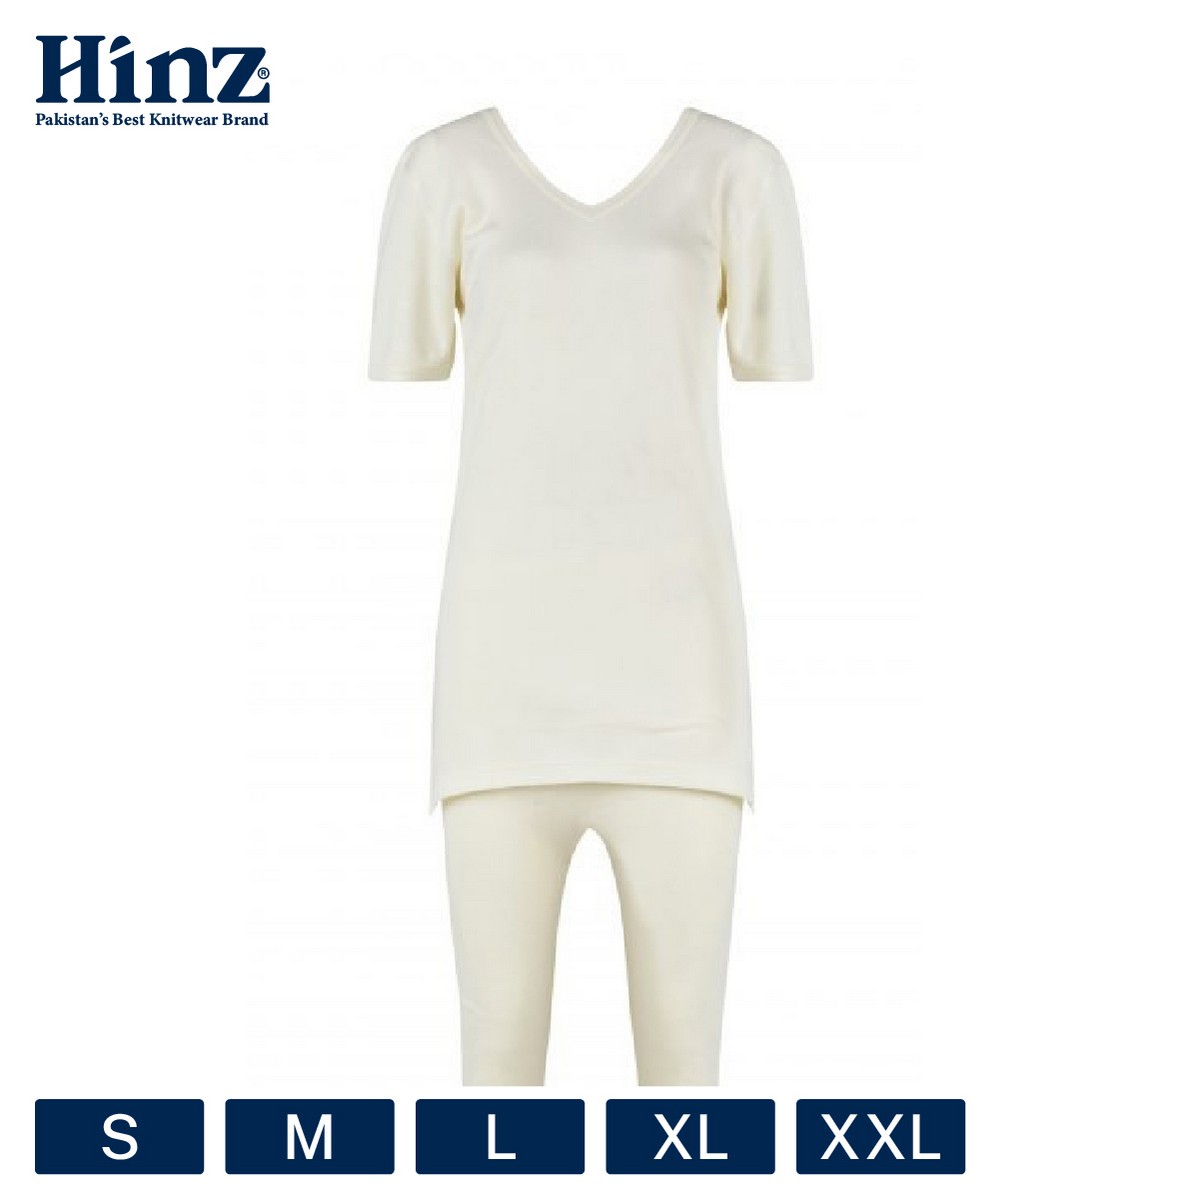 Buy Women's Premium Warmer Set in Pakistan - Hinz – Hinz Knit